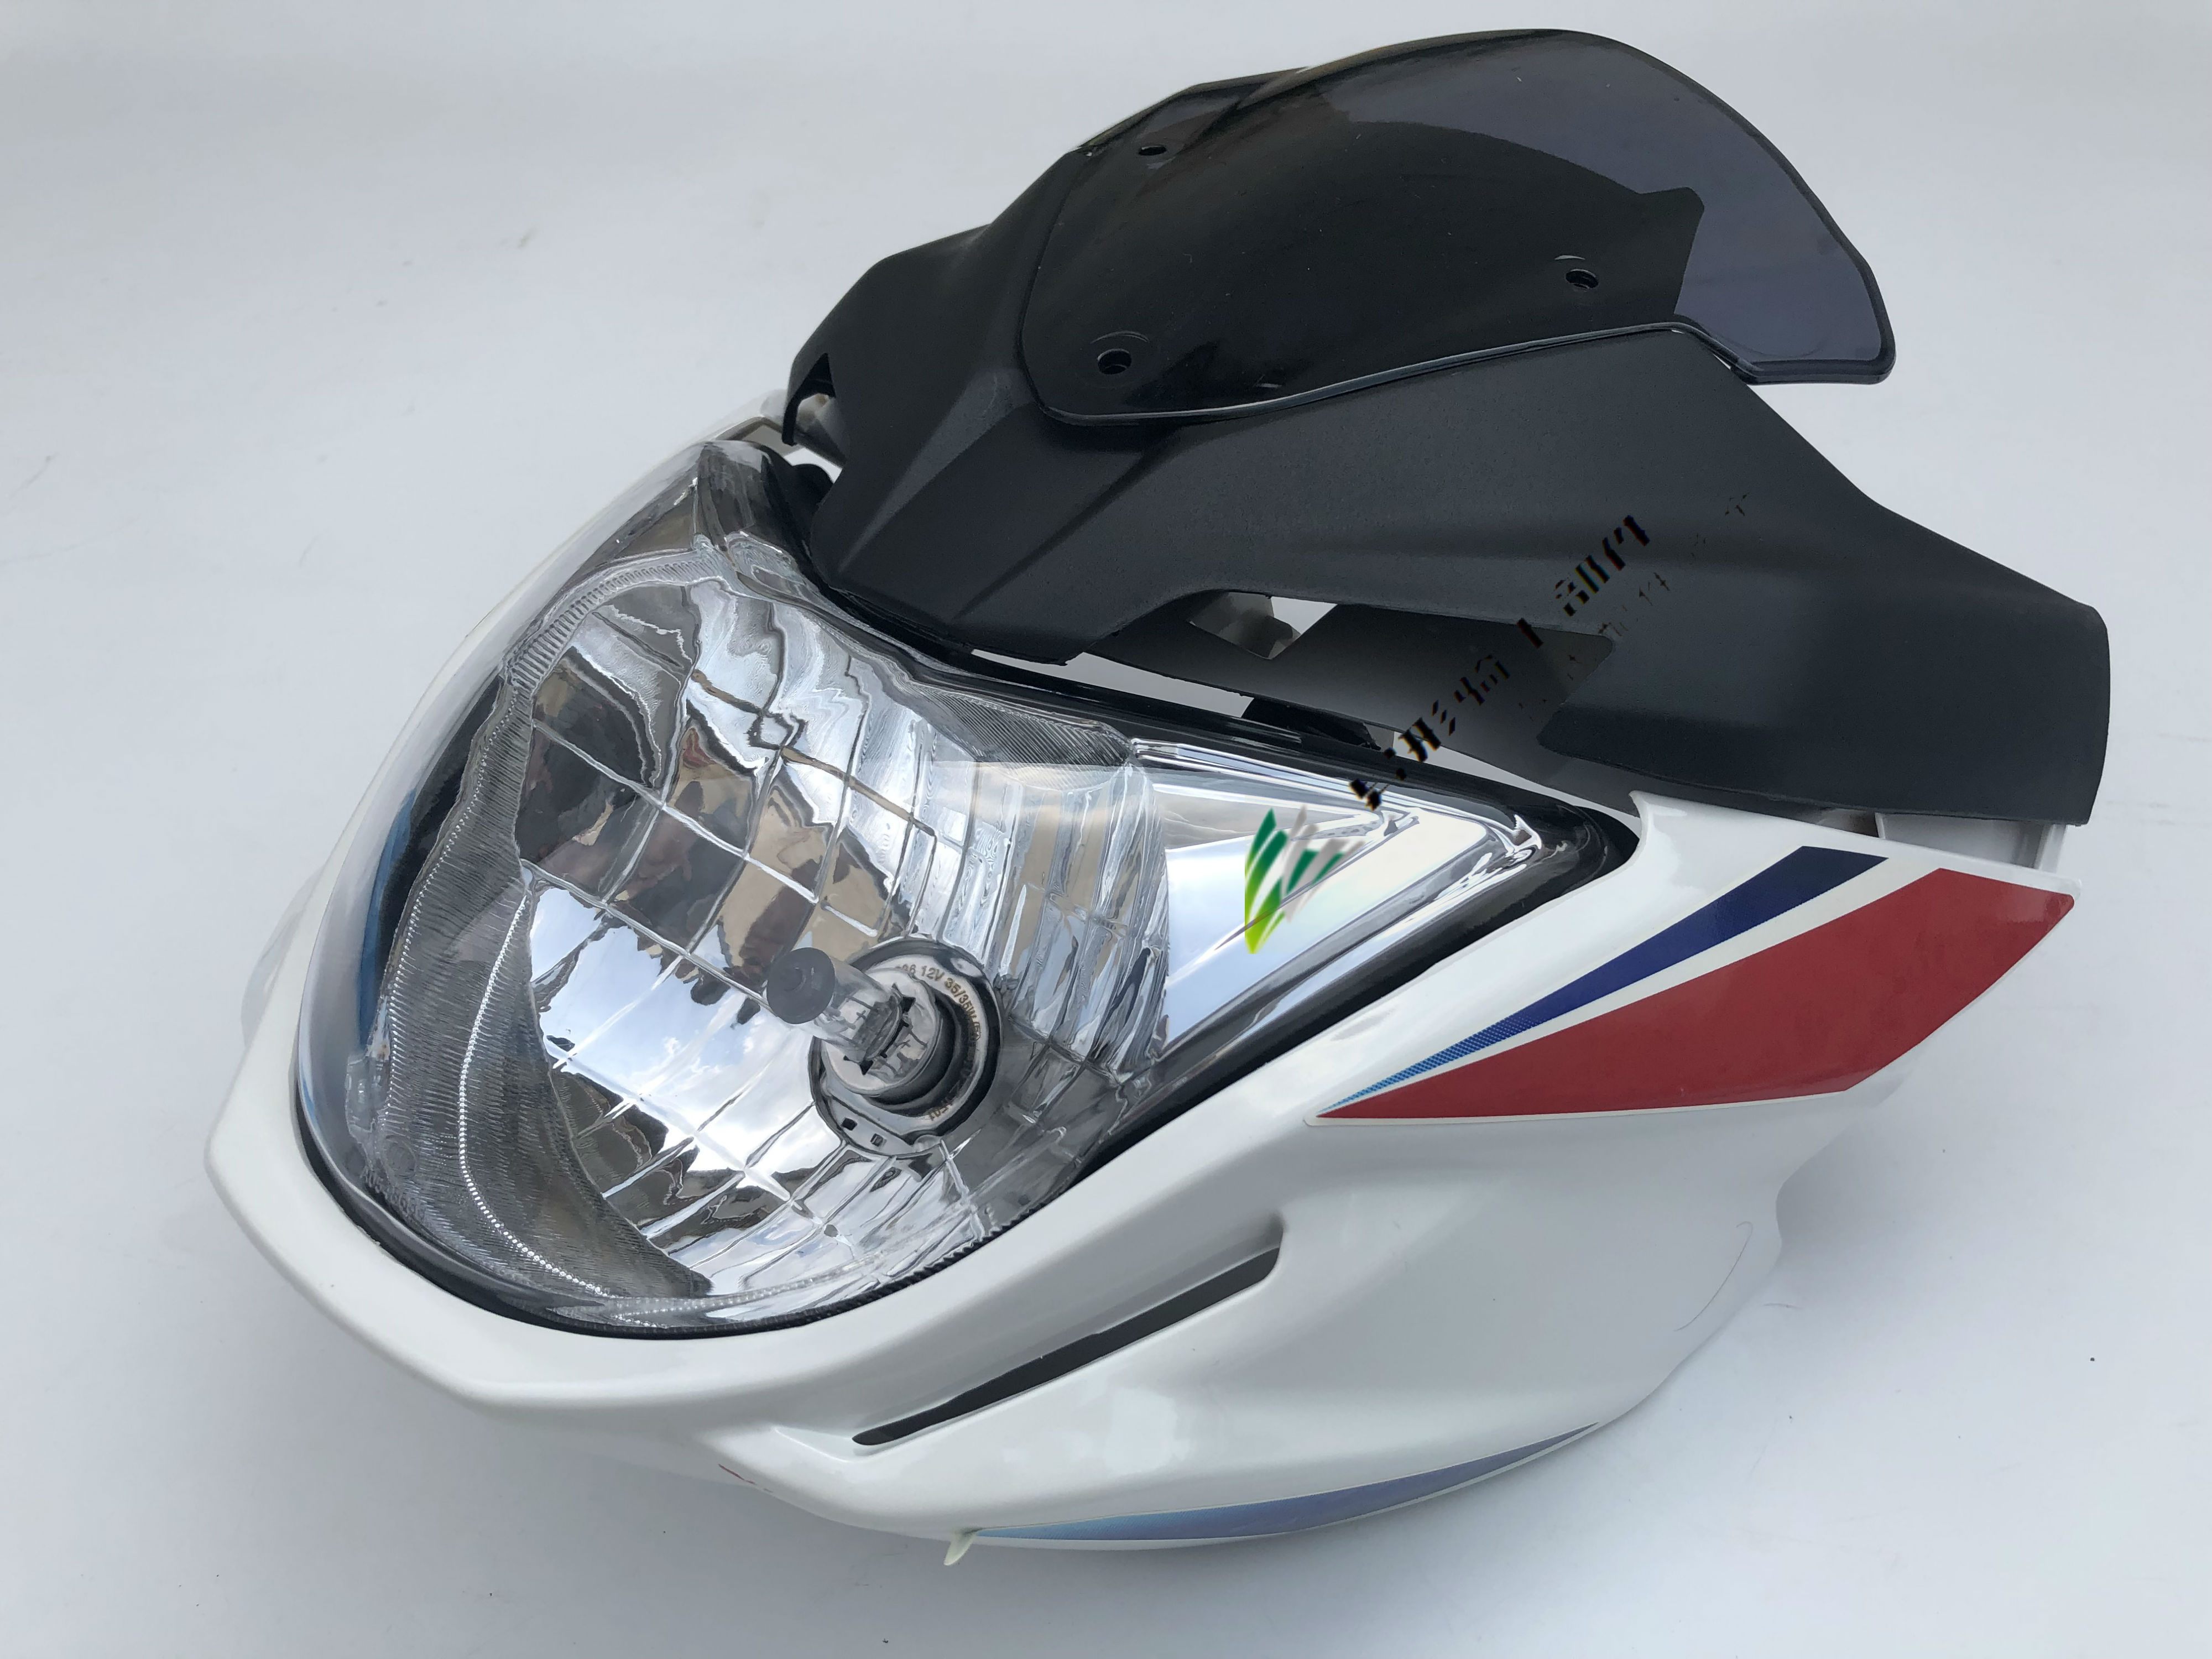 隆鑫珠峰豪达麟龙摩托车HD150-G LL150-6魔神锋神大灯头罩导流罩